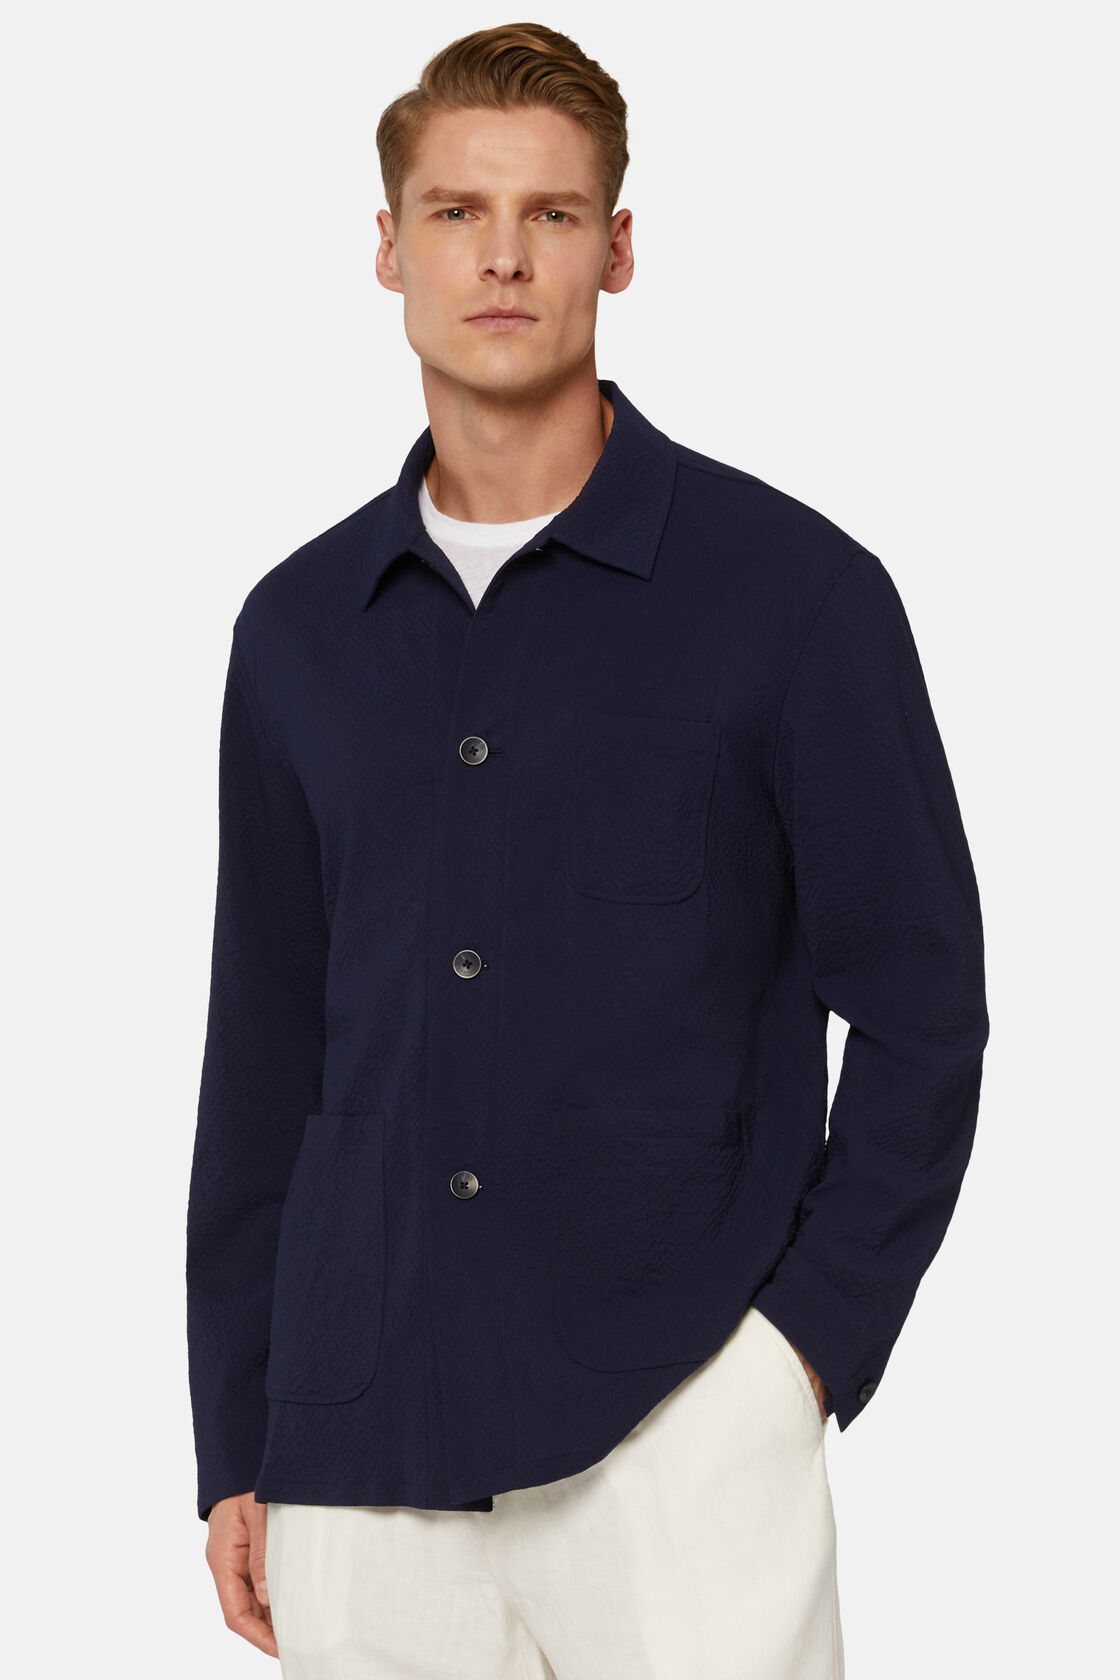 Navy Shirt Jacket In Seersucker Wool, Navy blue, hi-res